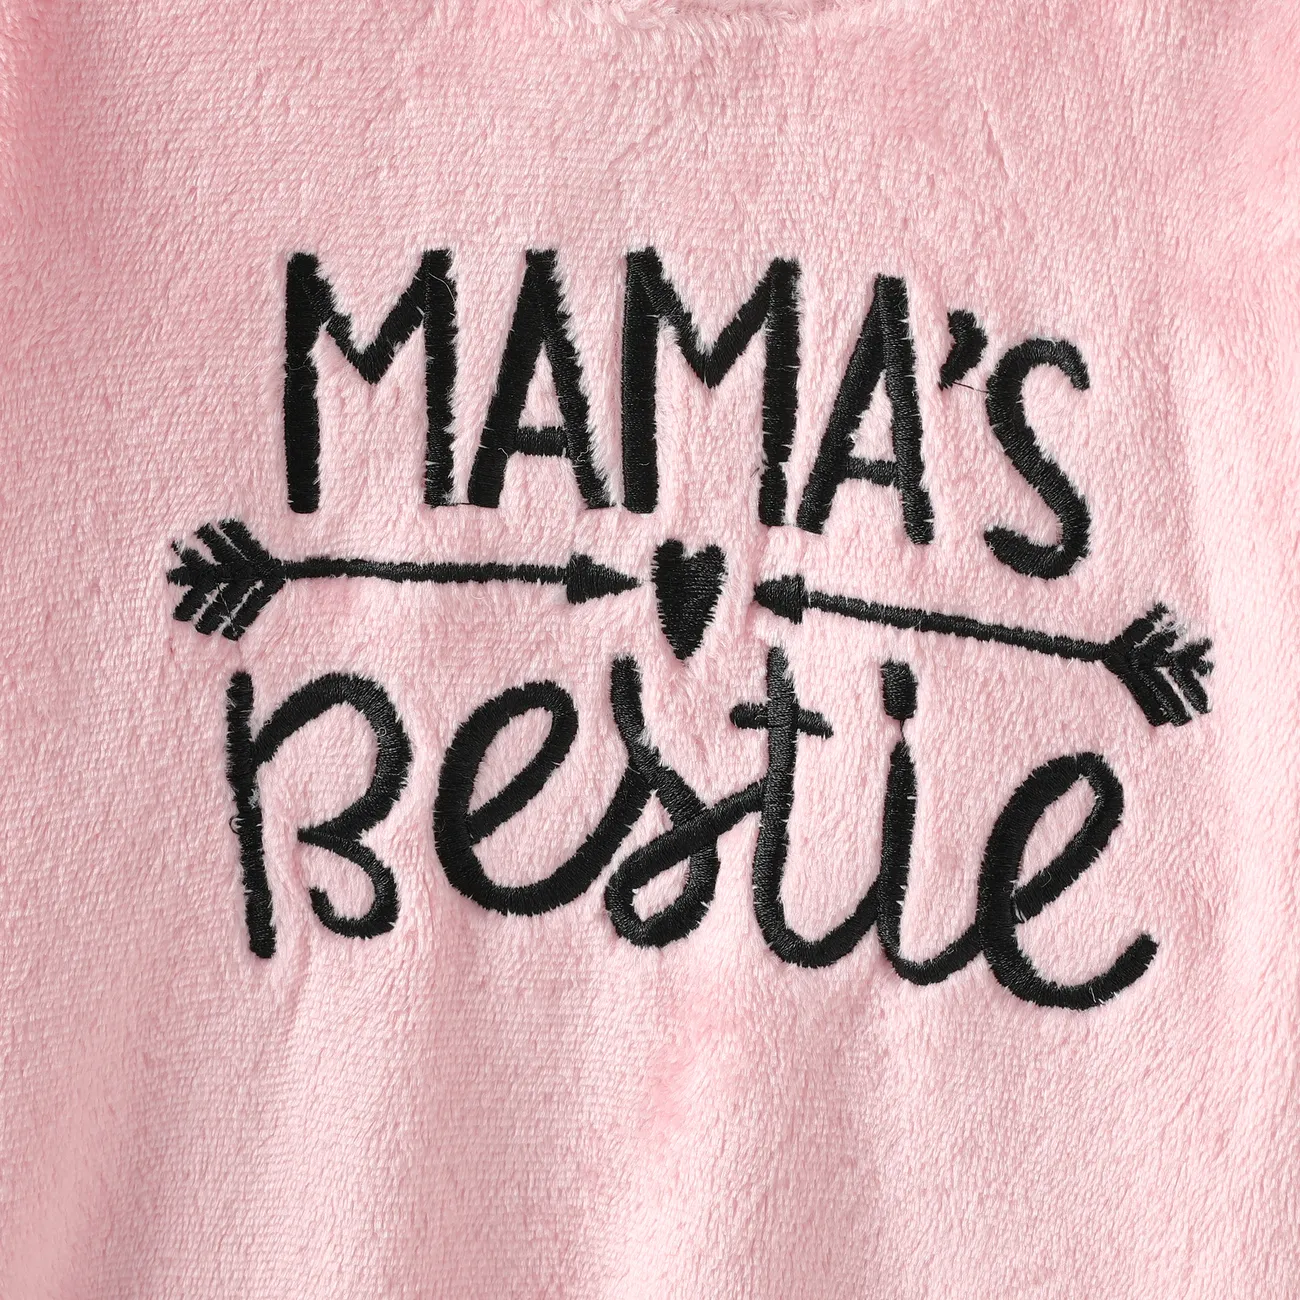 Toddler Girl Letter Embroidered Fleece Mock Neck Long-sleeve Pink Sweatshirt Dress Pink big image 1